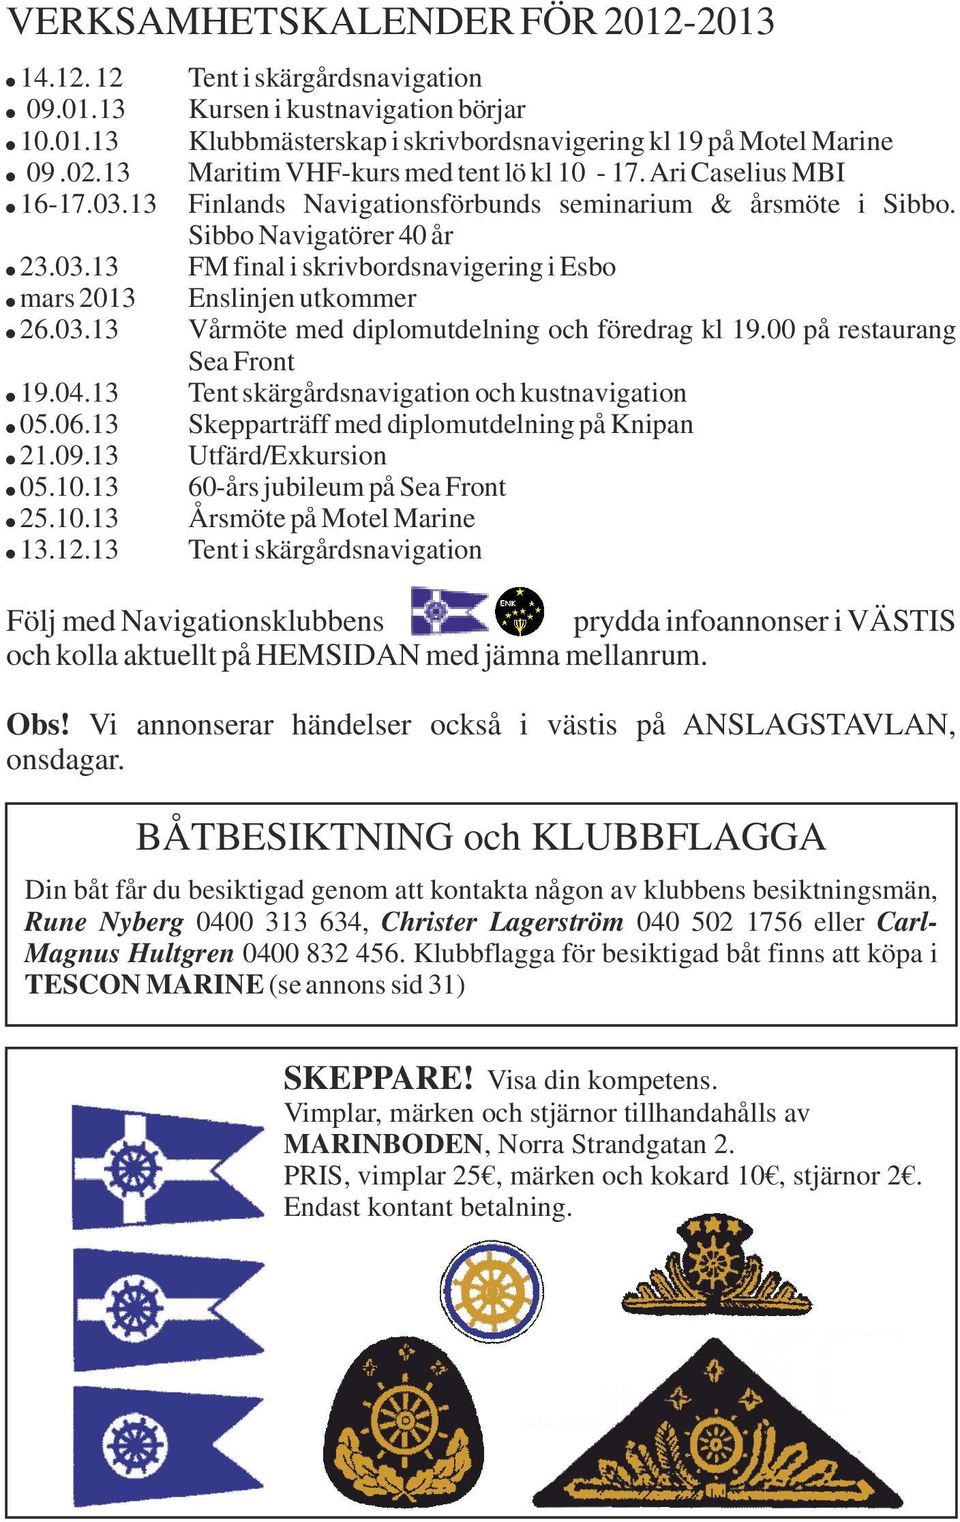 mars 2013 Enslinjen utkommer! 26.03.13 Vårmöte med diplomutdelning och föredrag kl 19.00 på restaurang Sea Front! 19.04.13 Tent skärgårdsnavigation och kustnavigation! 05.06.